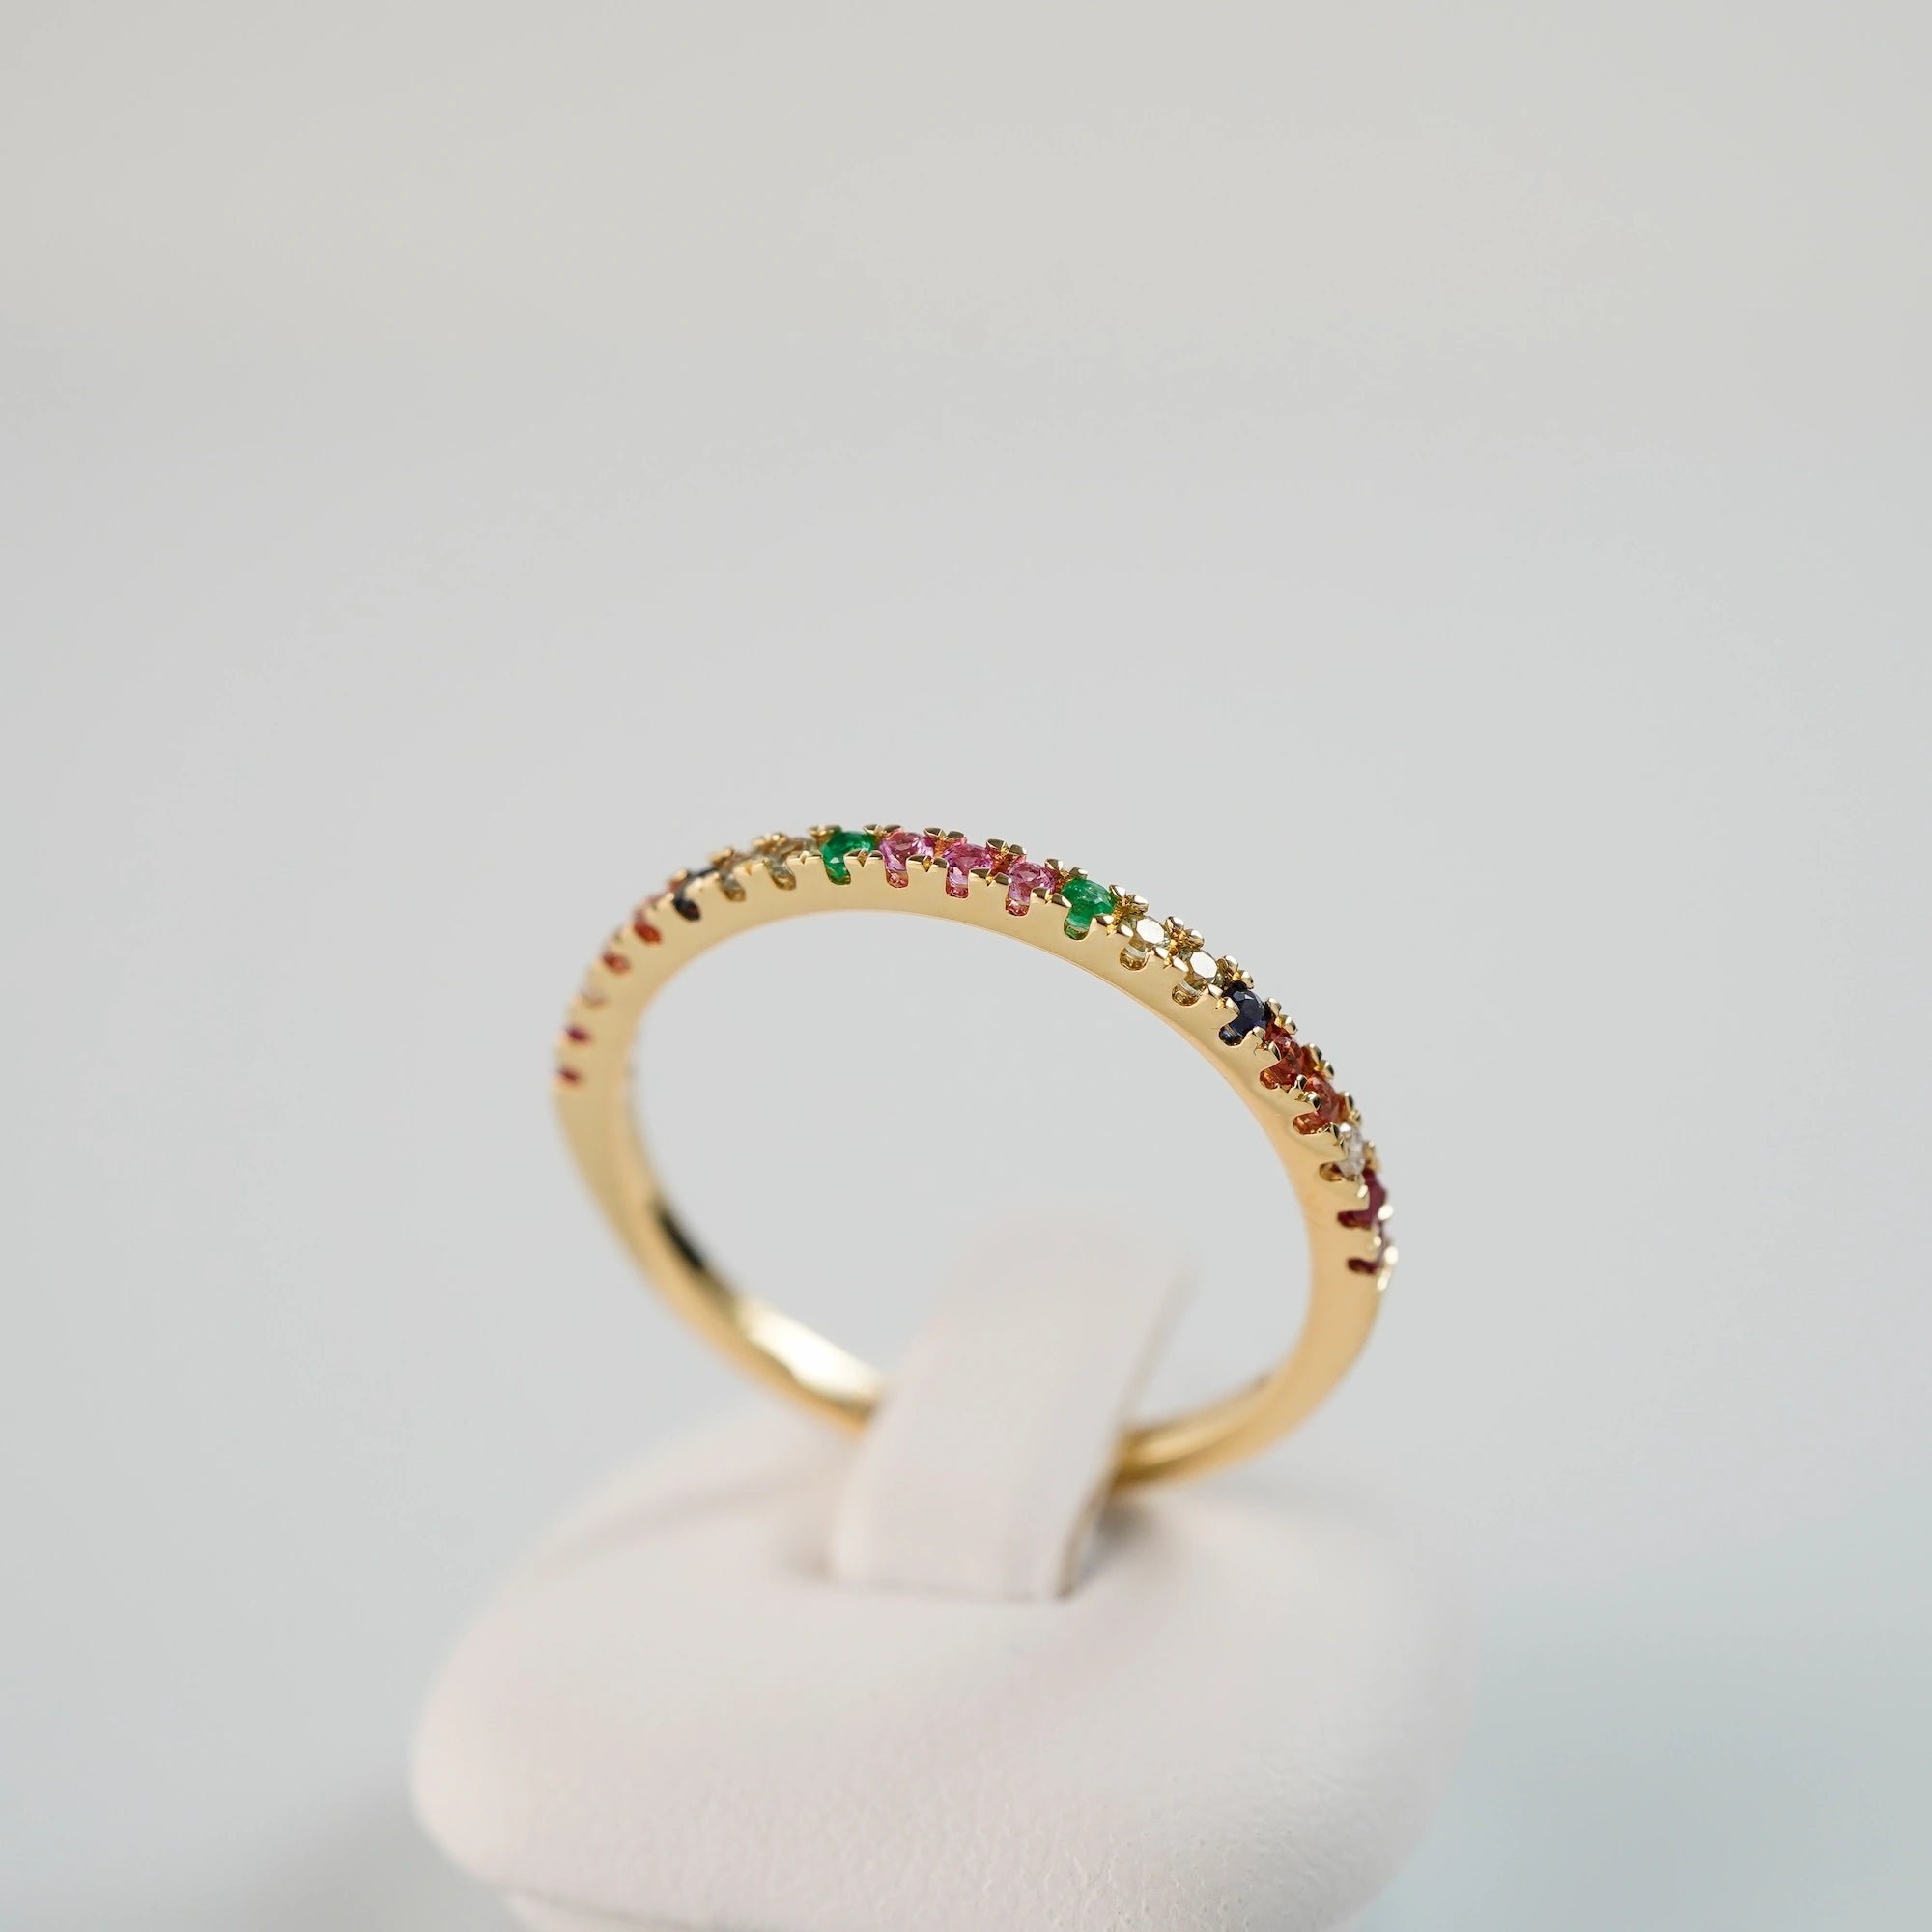 Produktfoto des liegenden Memoire-Rings mit einem Rainbow-Setting aus verschiedenen Edelsteinen mit einem bunten Farbspiel, mit Fokus auf den gefassten Edelsteinen